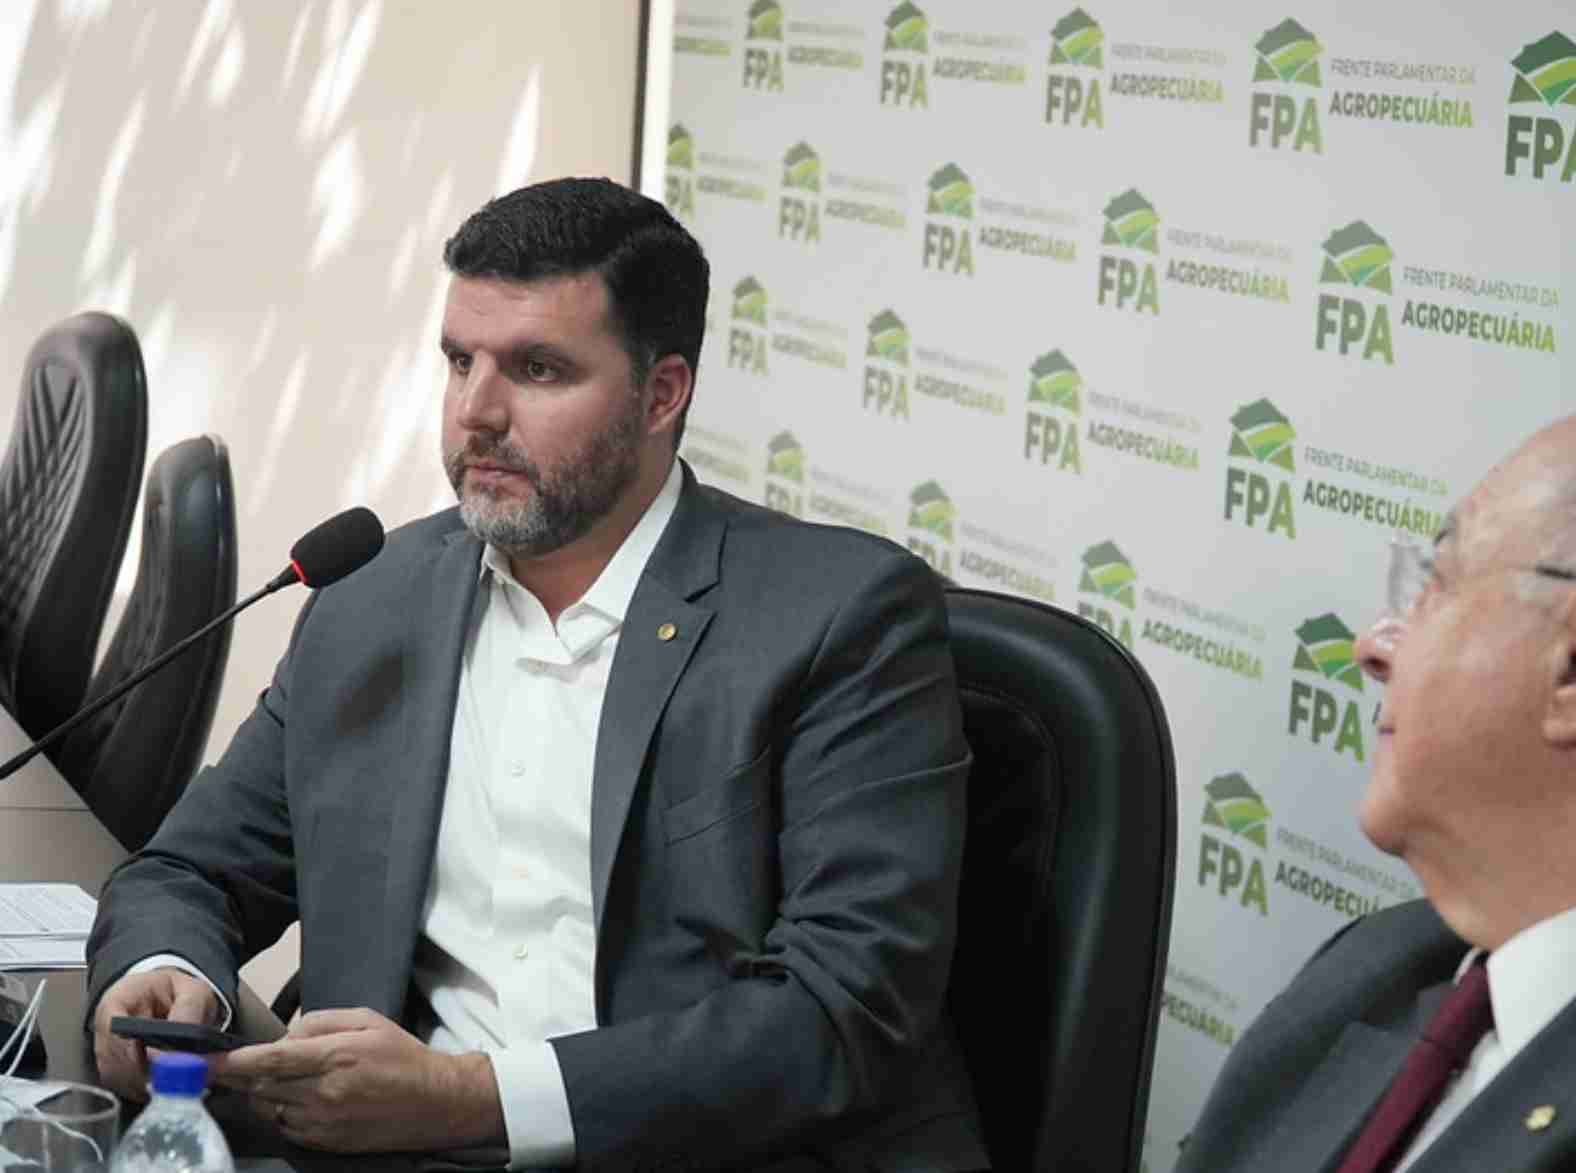 Frente parlamentar da agropecuária fortalece o direito de propriedade no Brasil